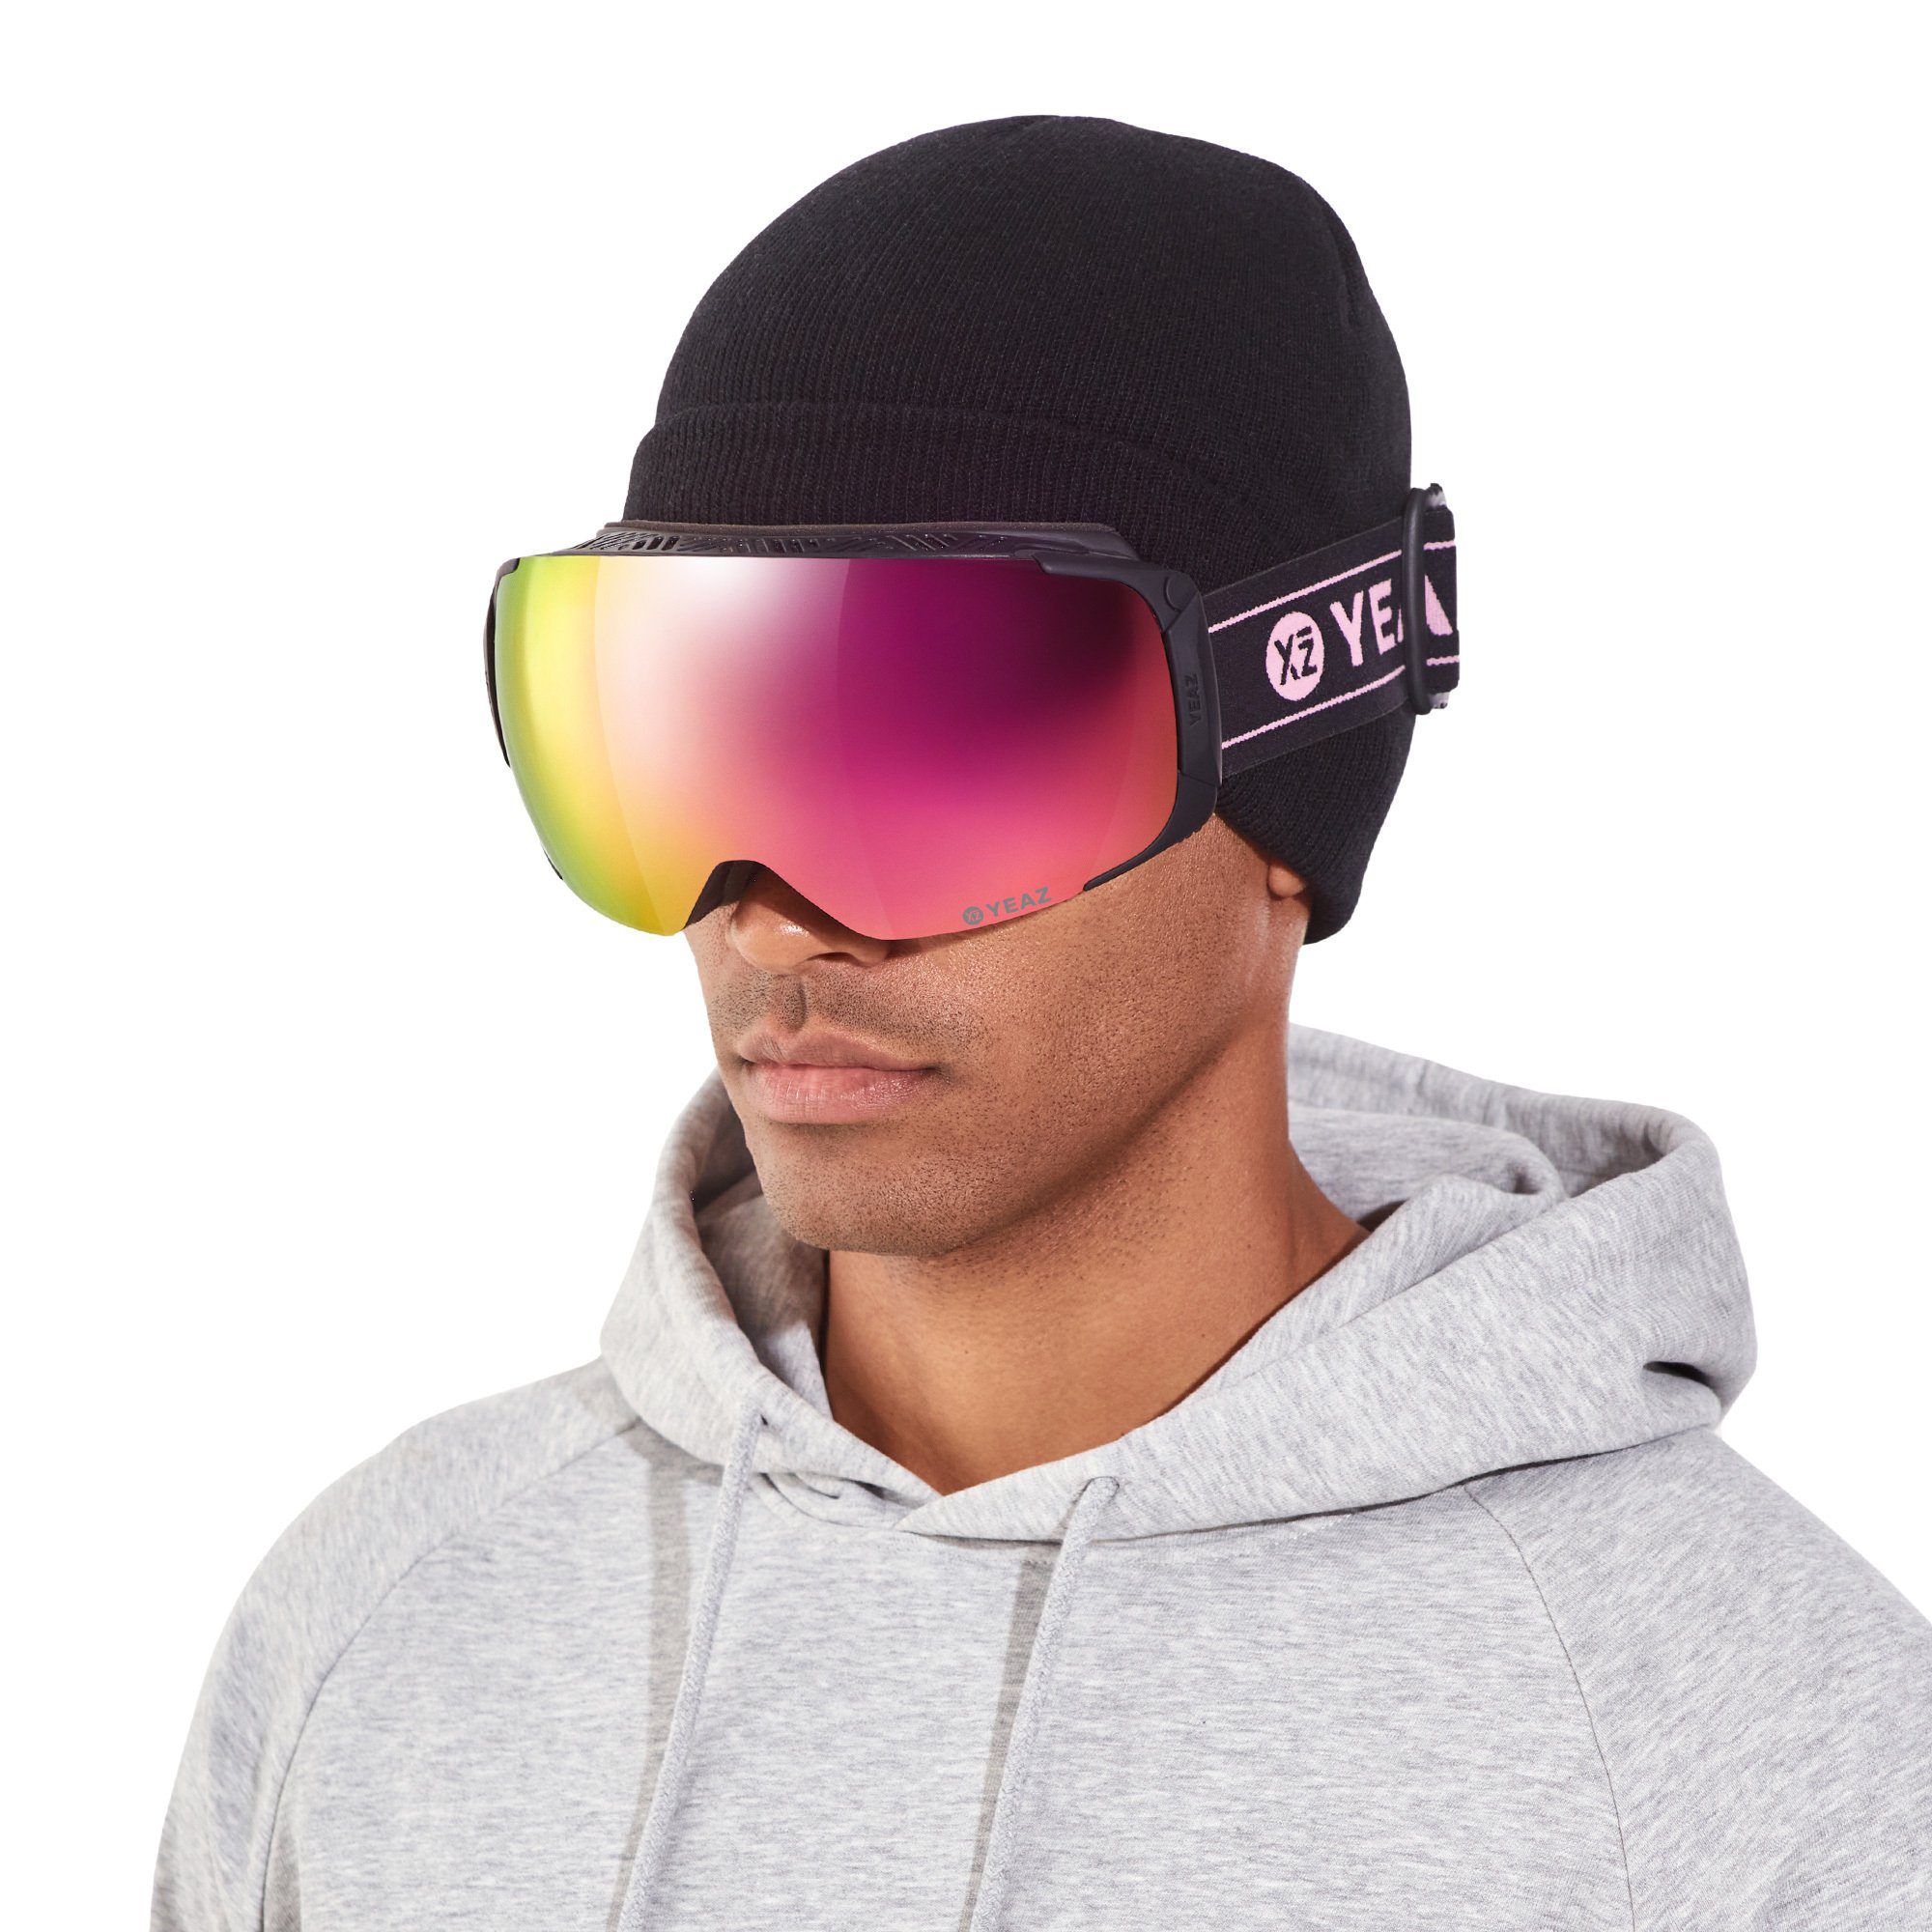 und und Skibrille und ski- Premium-Ski- Jugendliche TWEAK-X snowboard-brille, YEAZ Snowboardbrille Erwachsene für